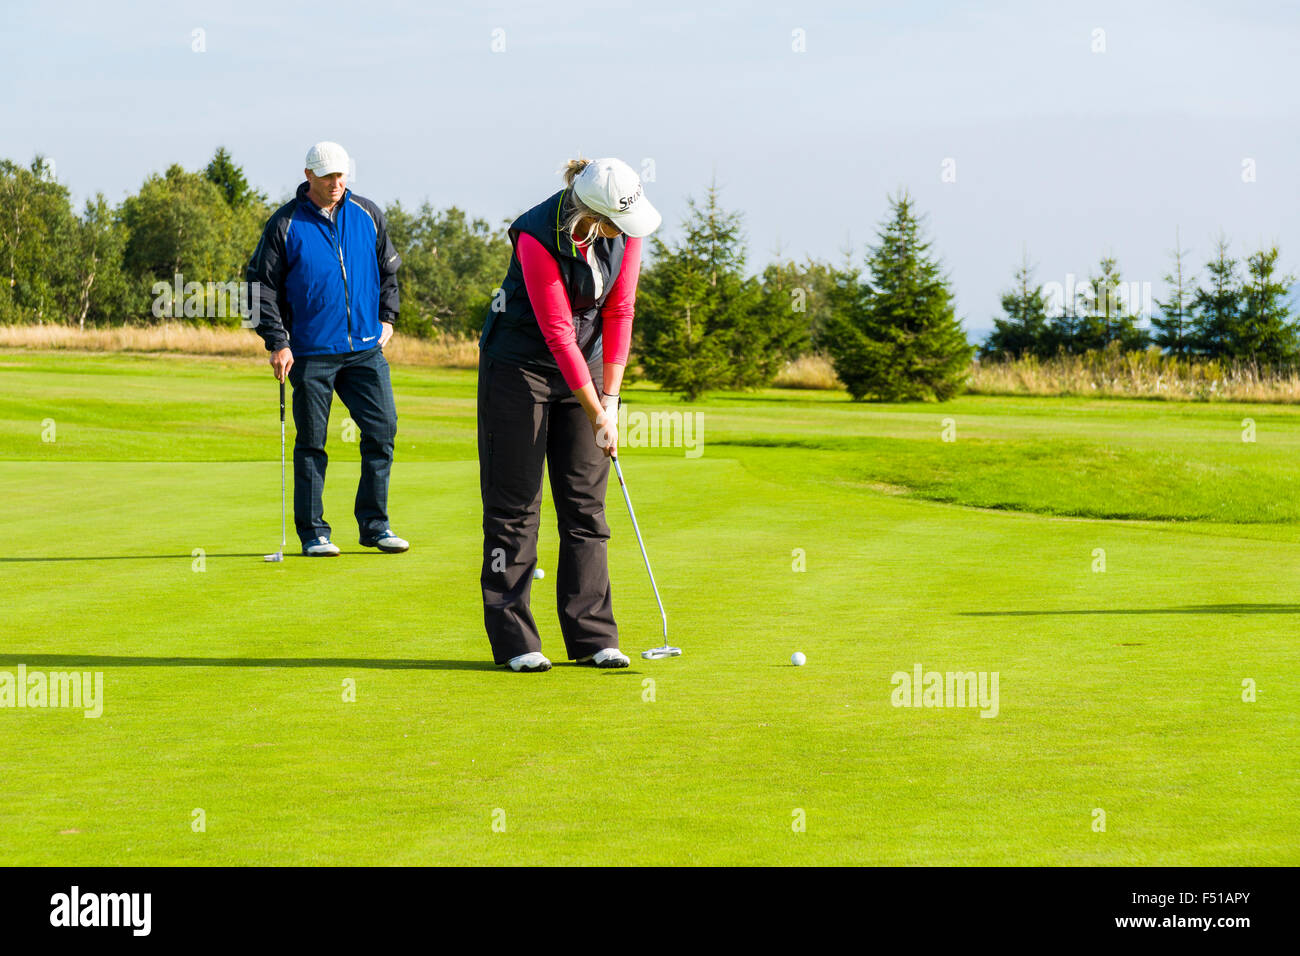 Un uomo e una donna sta giocando a golf su un verde prato Foto Stock